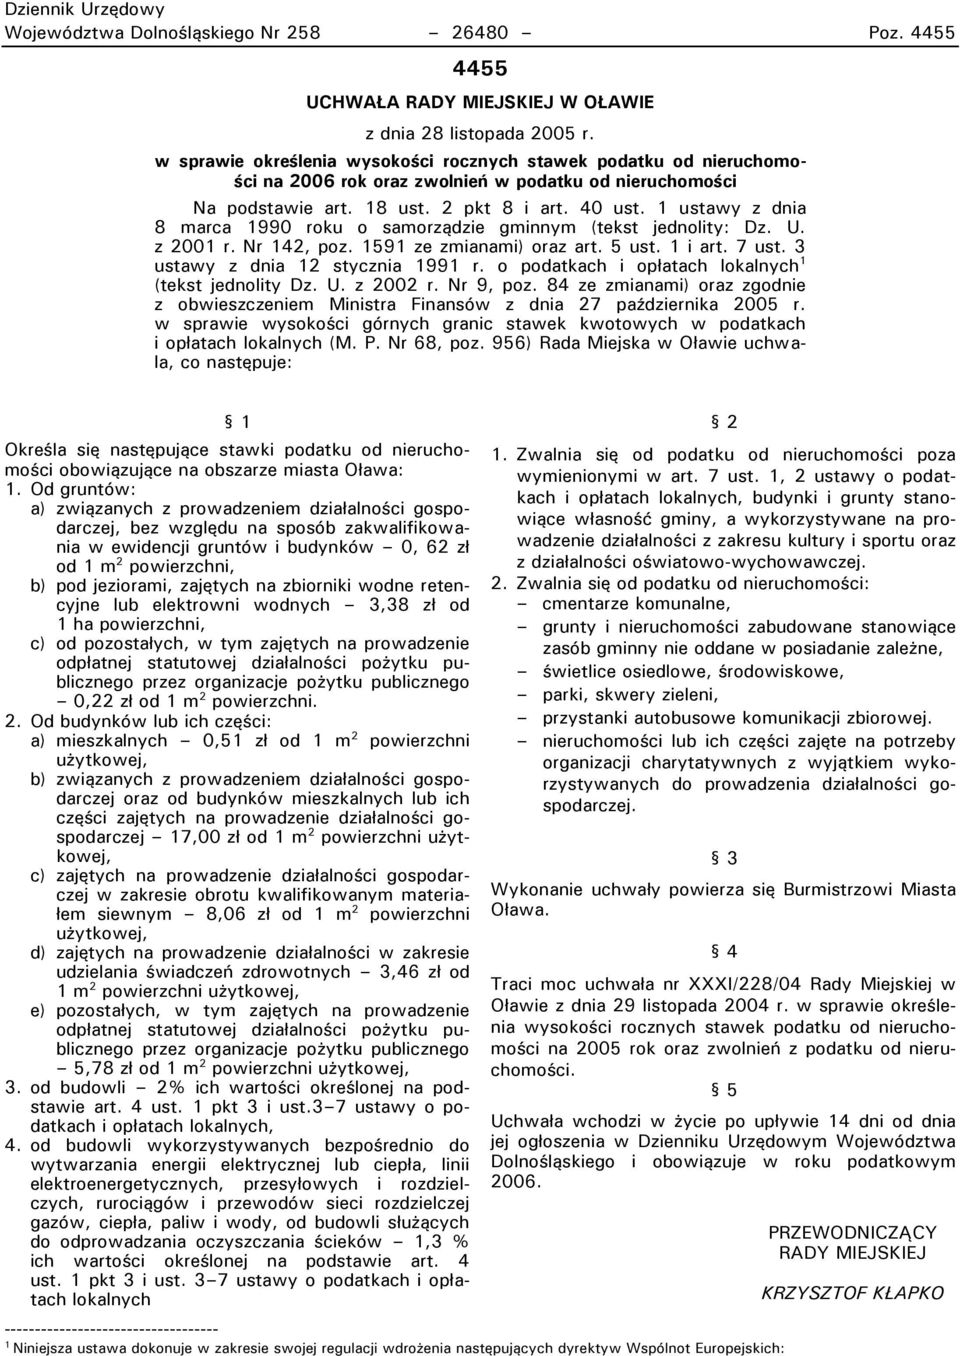 1 ustawy z dnia 8 marca 1990 roku o samorządzie gminnym (tekst jednolity: Dz. U. z 2001 r. Nr 142, poz. 1591 ze zmianami) oraz art. 5 ust. 1 i art. 7 ust. 3 ustawy z dnia 12 stycznia 1991 r.